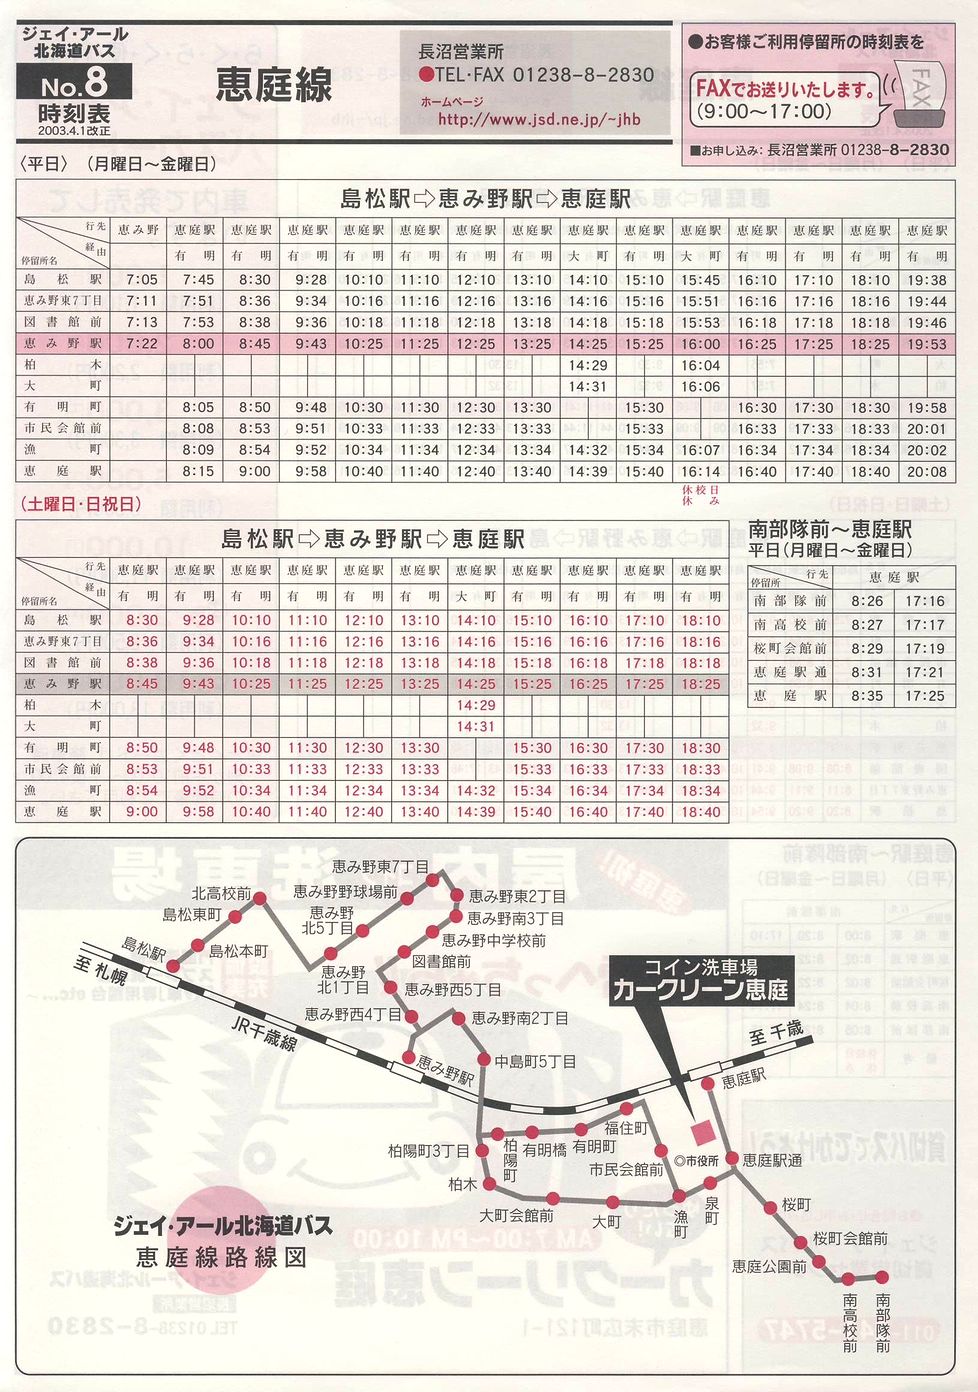 2003-04-01改正_ジェイ・アール北海道バス_空知線時刻表８表面